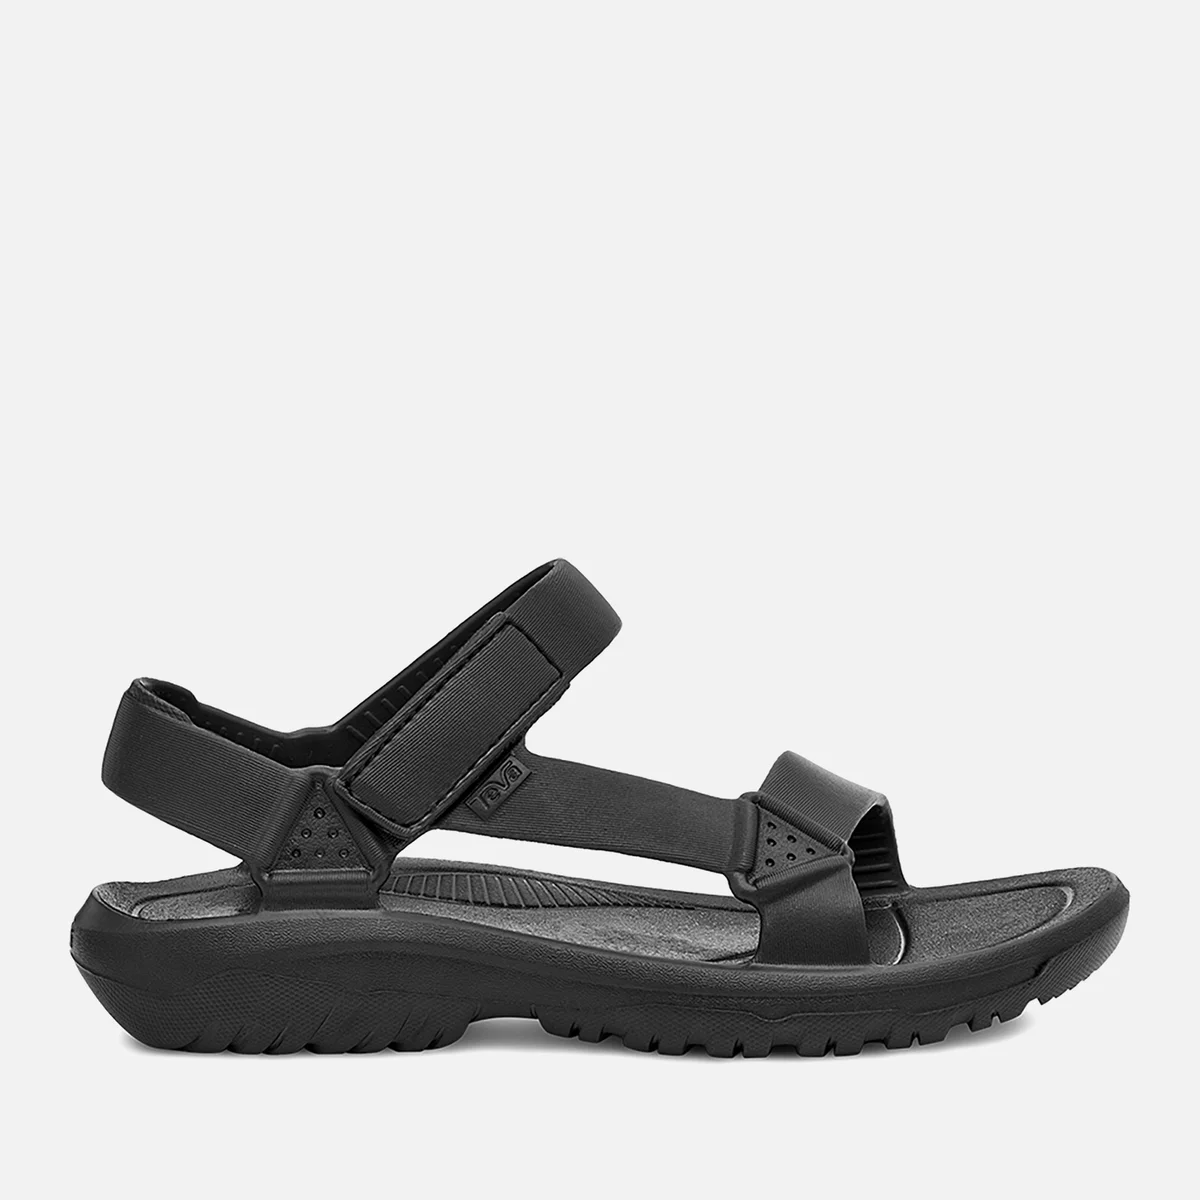 Teva Men's Hurricane Drift Sandals - Black Image 1